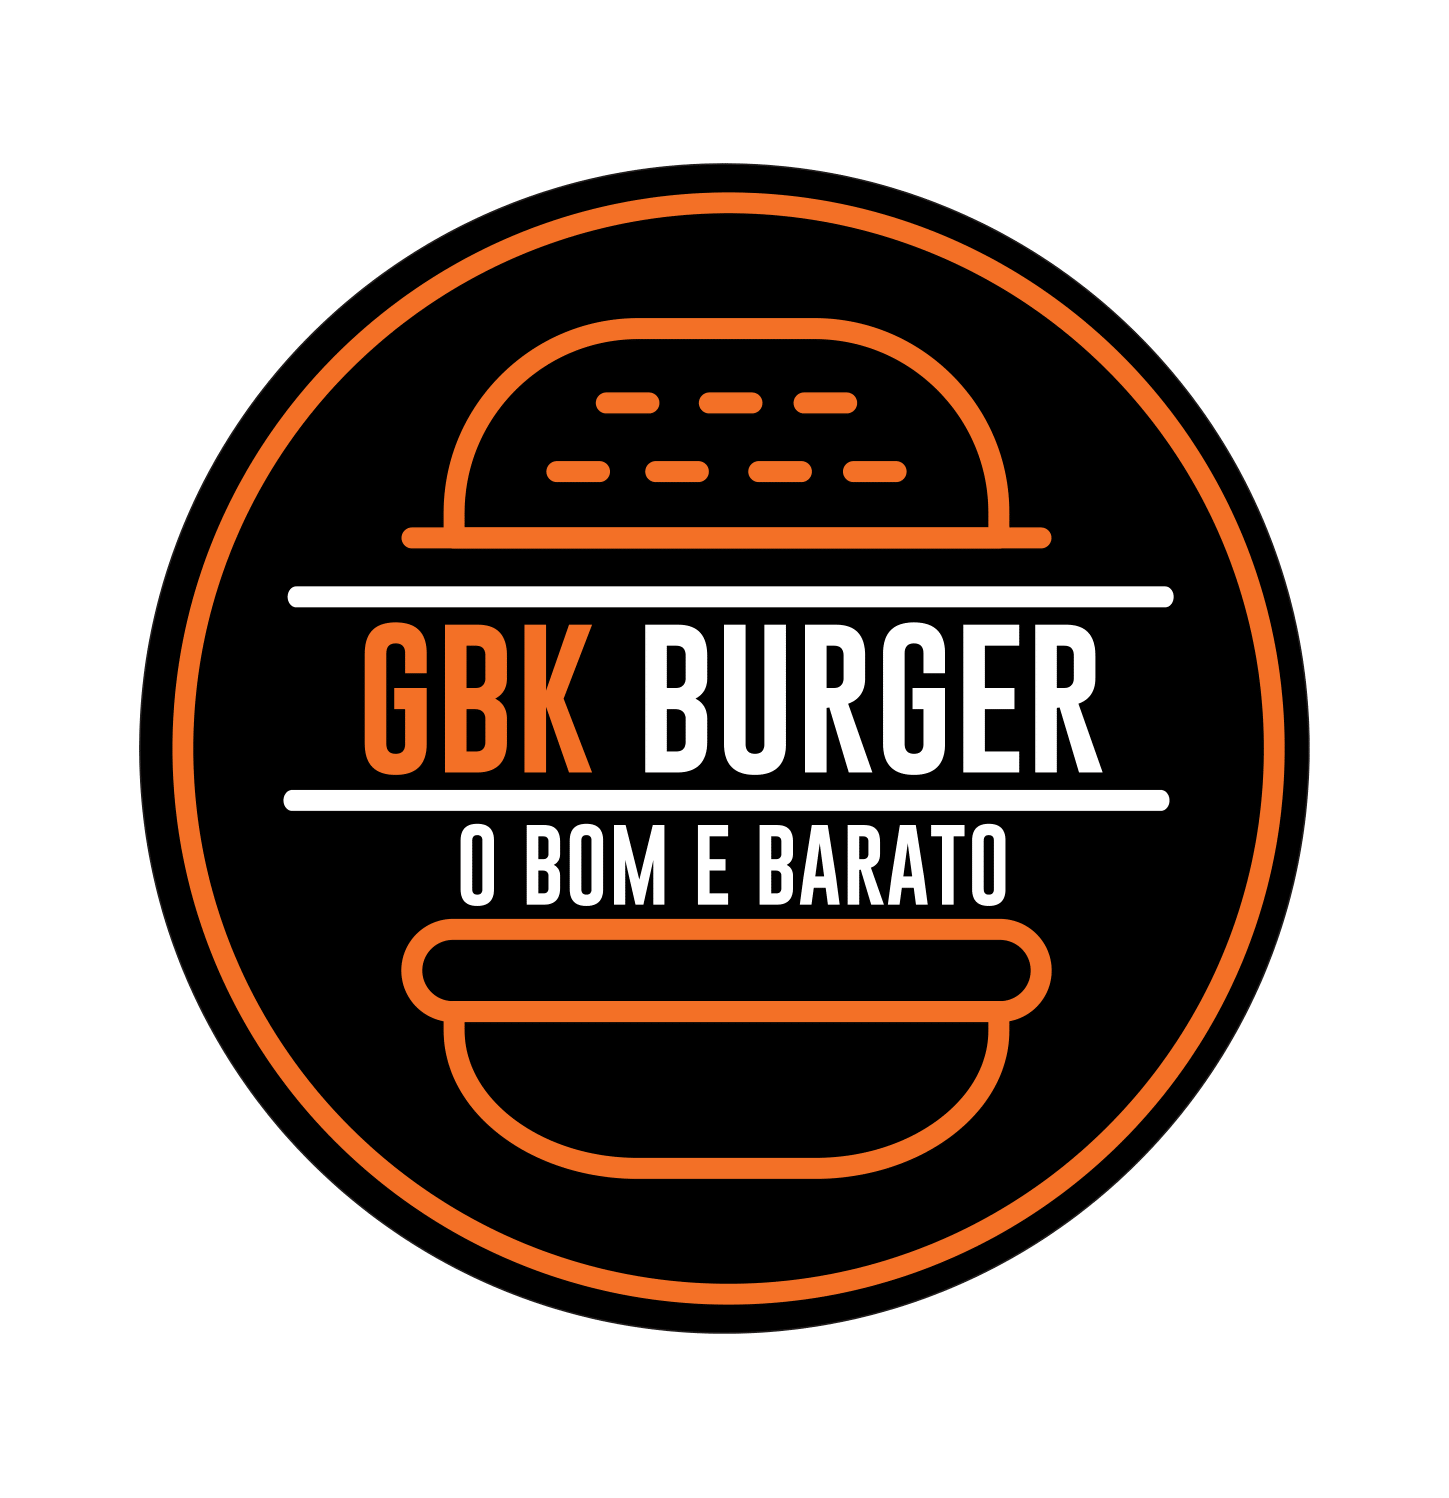 GBK Burger - Barão